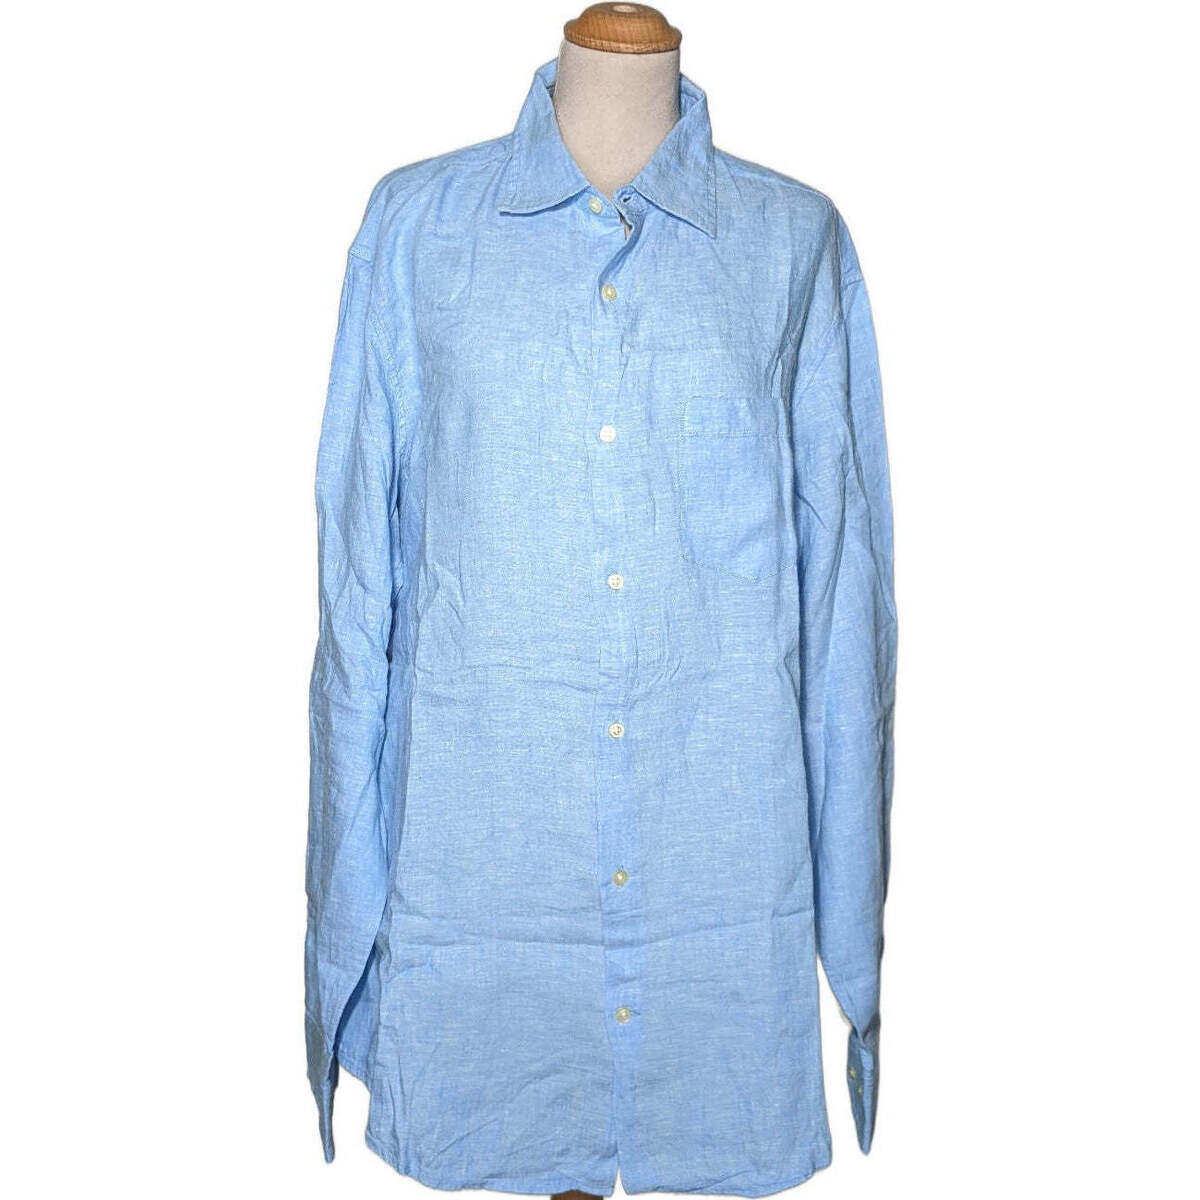 Vêtements Homme Chemises manches longues Banana Republic 40 - T3 - L Bleu